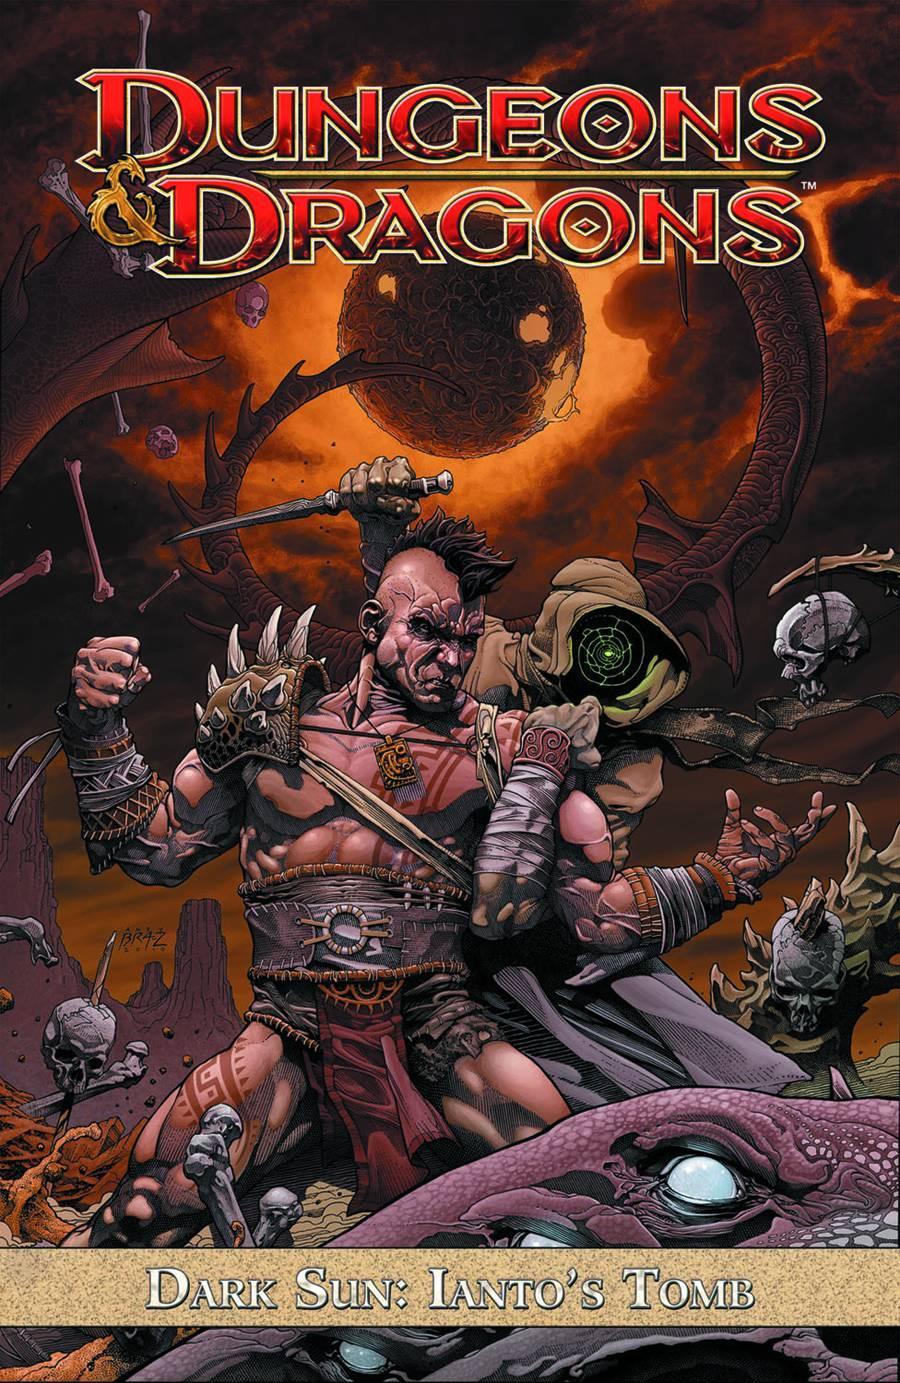 DUNGEONS & DRAGONS DARK SUN TP VOL 01 - Kings Comics